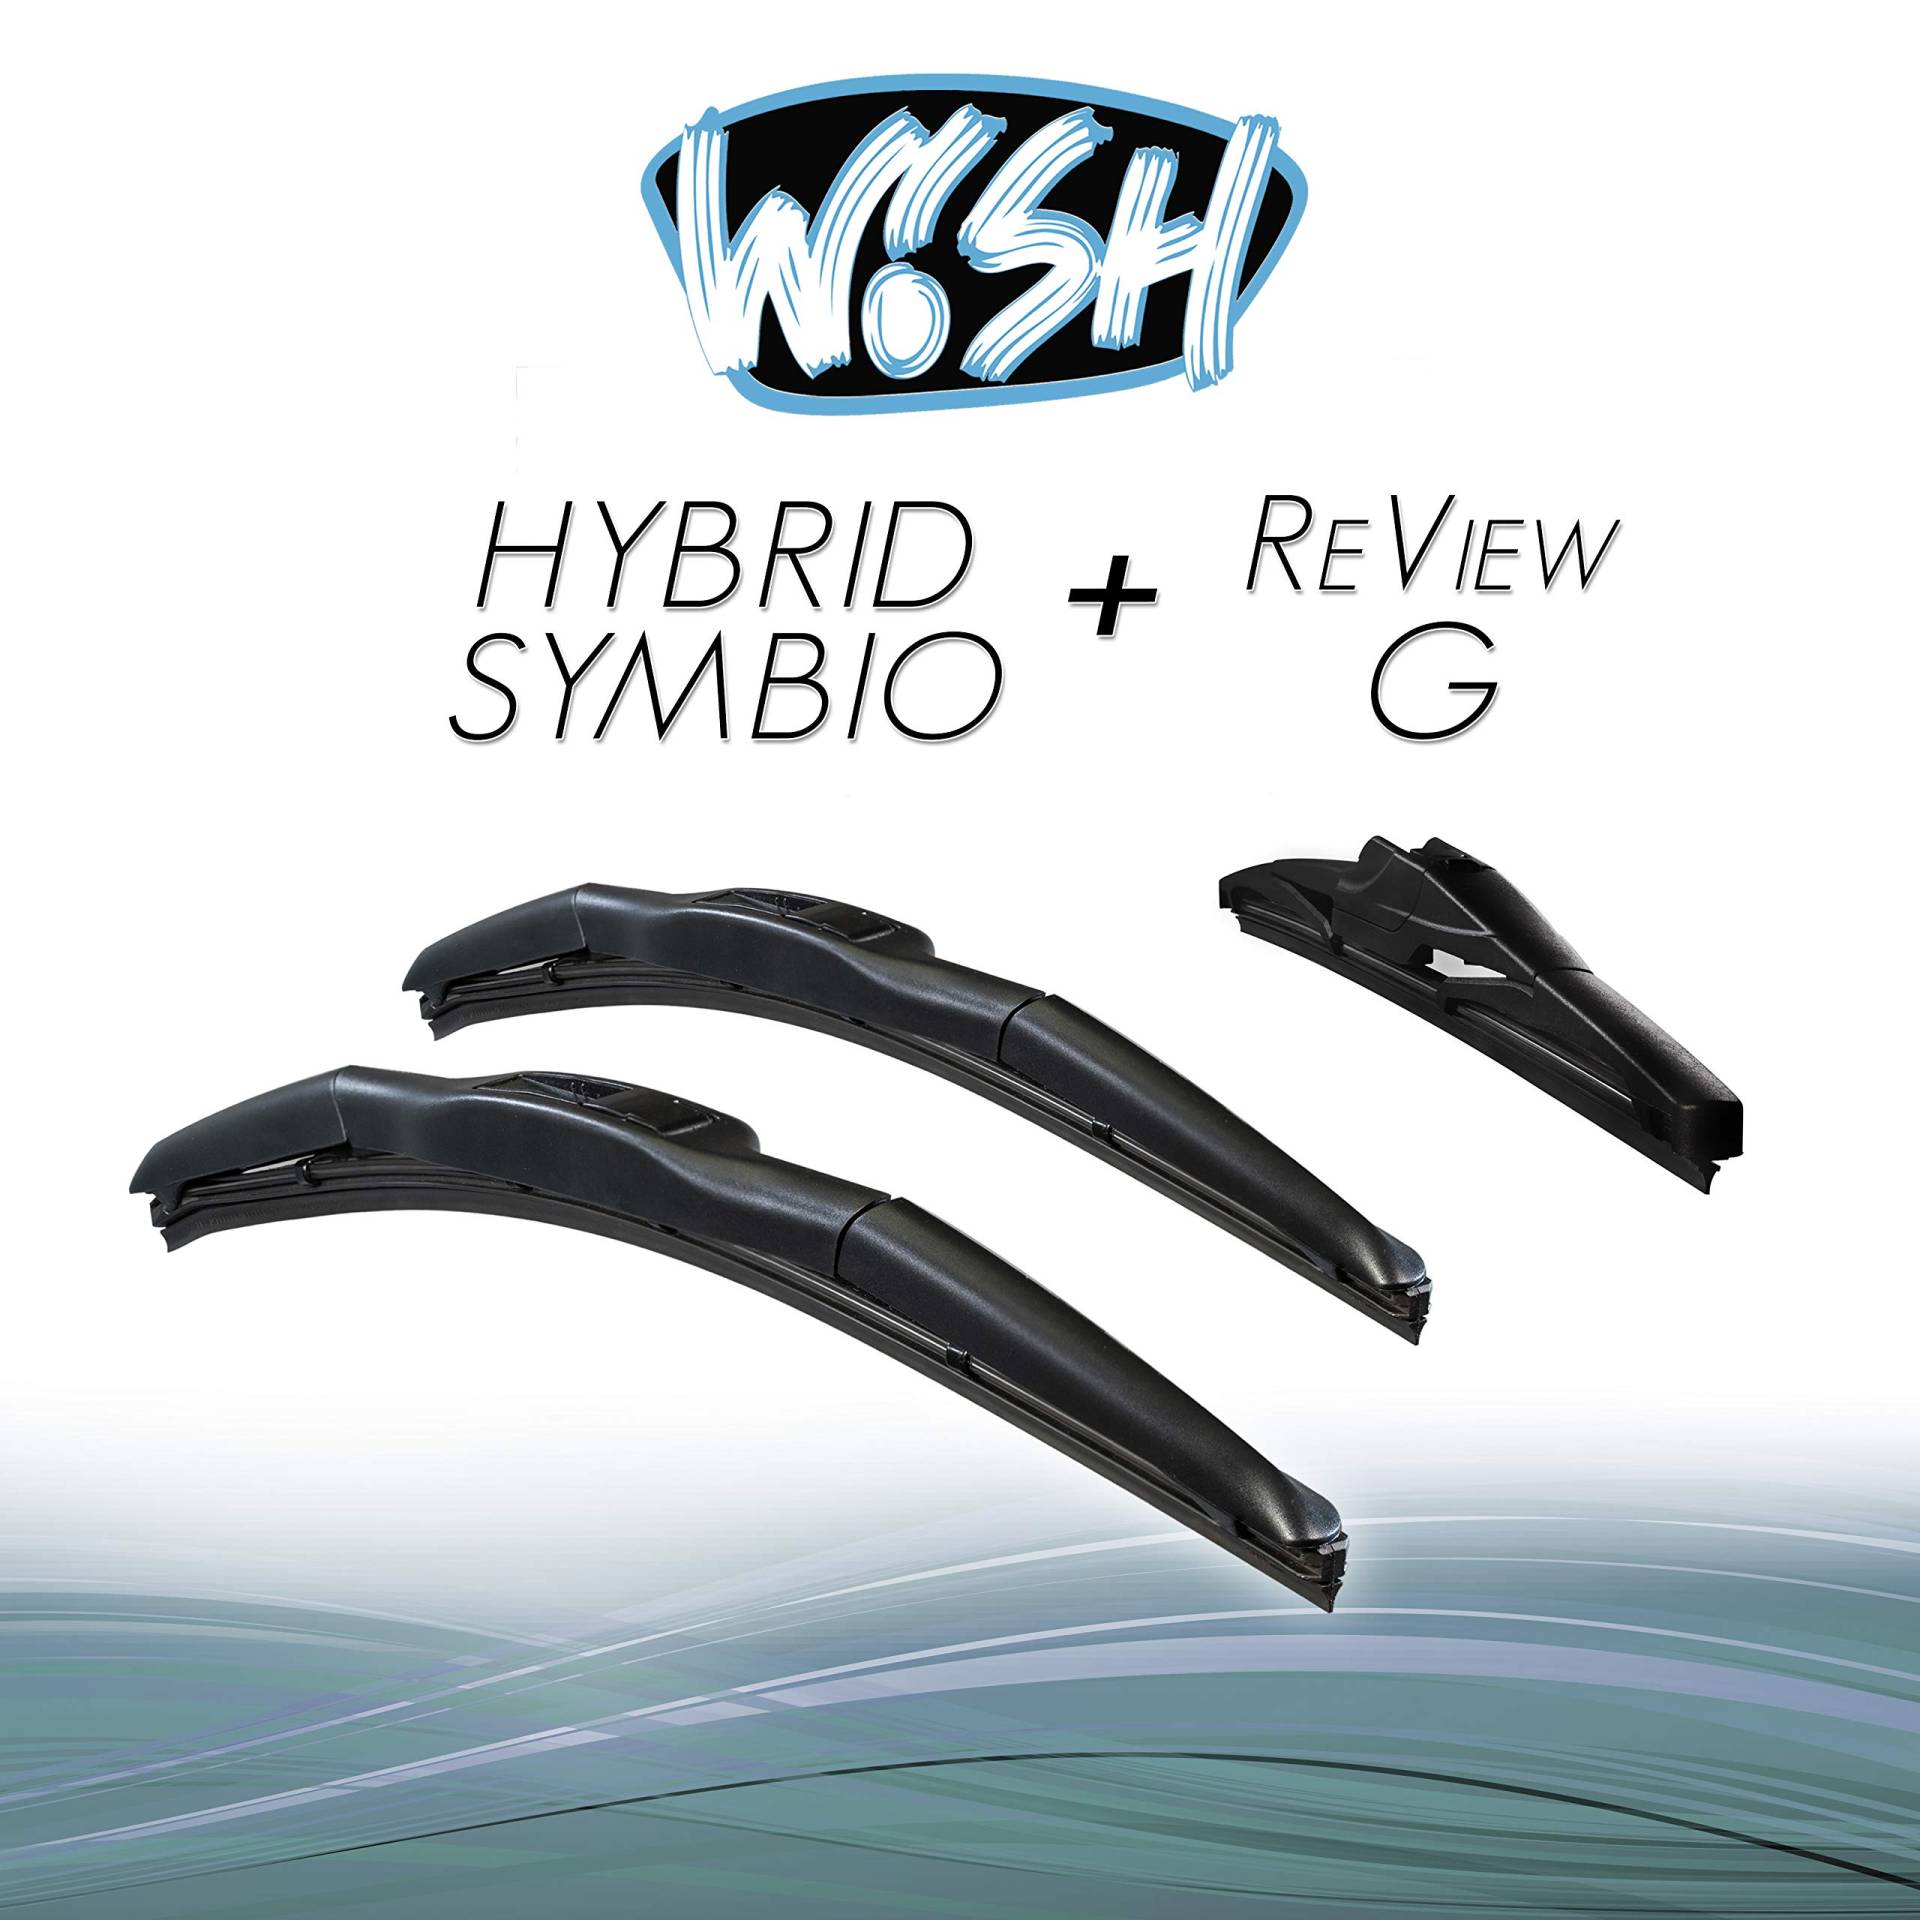 Wish® Hybrid Symbio Satz Front + Heck Scheibenwischer Länge: 26" 650mm / 18" 450mm / 10" 250mm Wischblätter Vorne und Hinten Hybrid-Scheibenwischer + Review G HS26.18.10RG von Wish